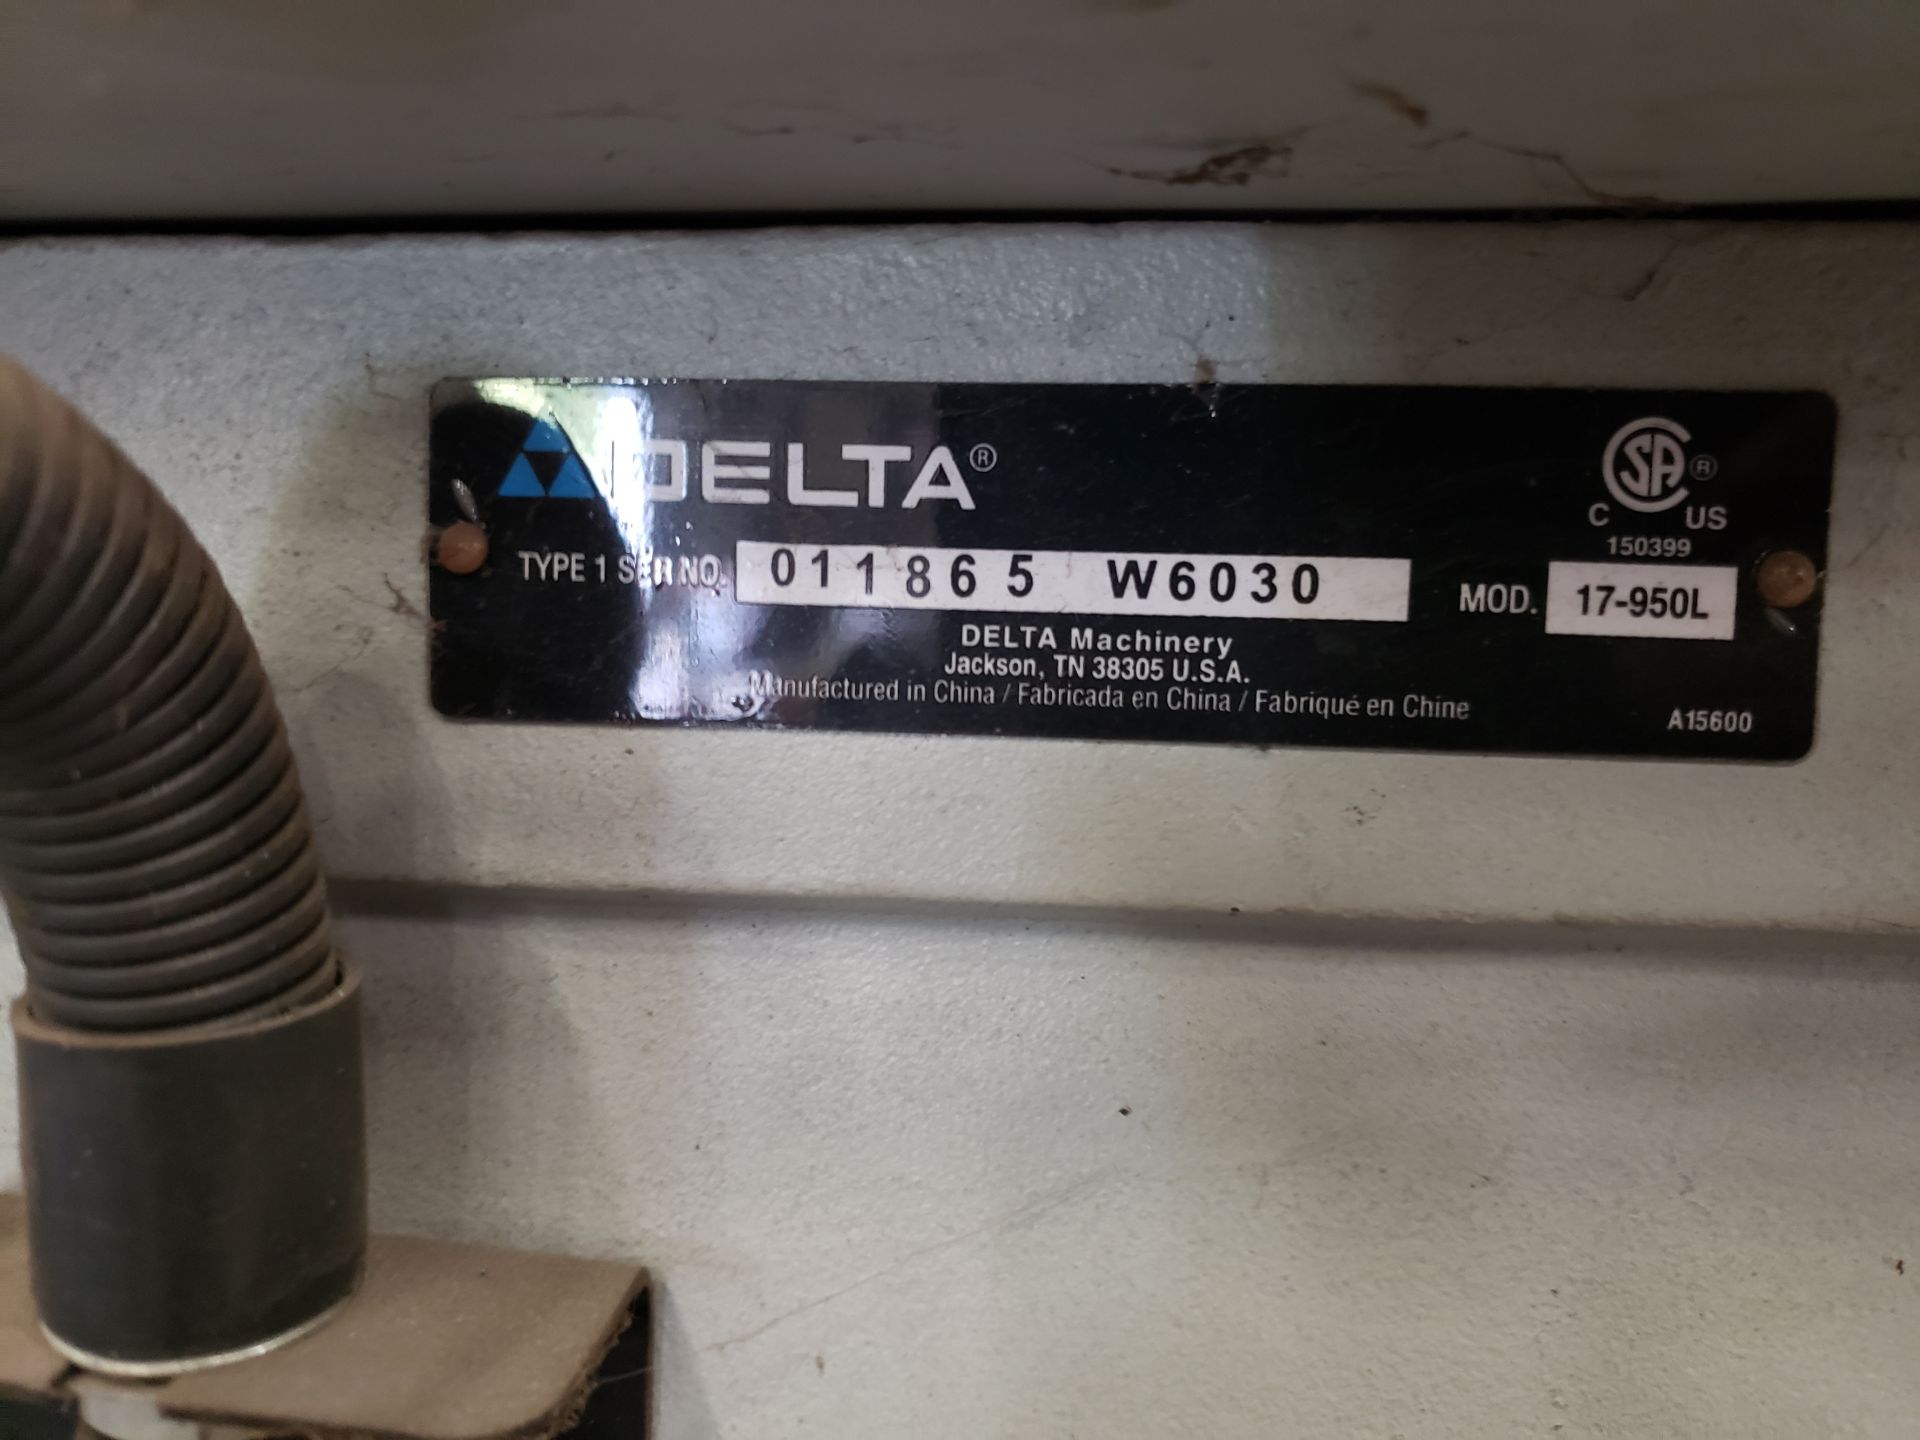 Delta Model 17-950L Pedestal Drill Press - Image 3 of 3